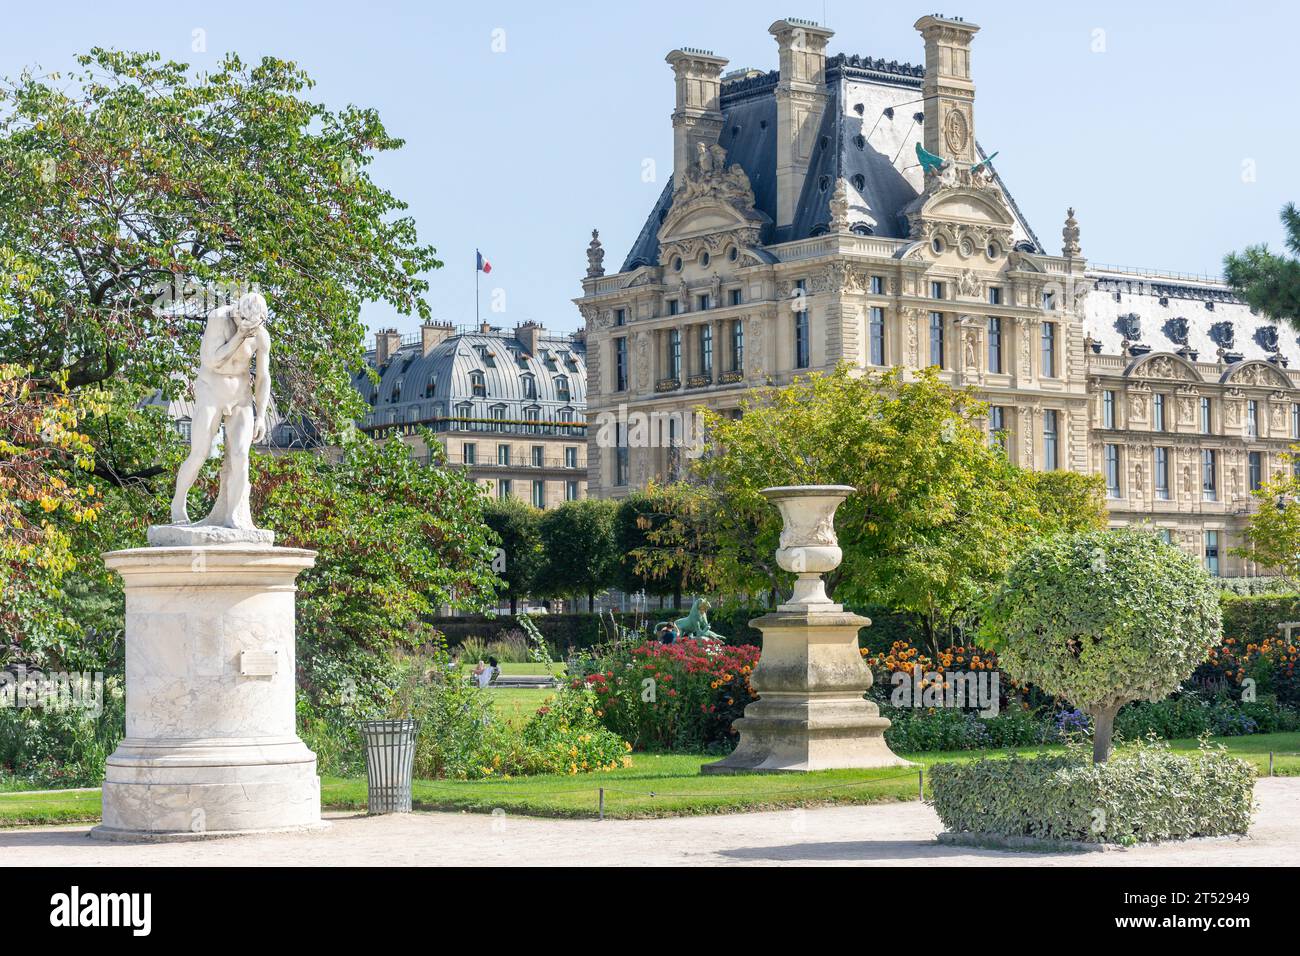 The Louvre Museum (Musee du Louvre) from Jardin des Tuileries (Tuileries Garden), Place du Carrousel, Paris, Île-de-France, France Stock Photo